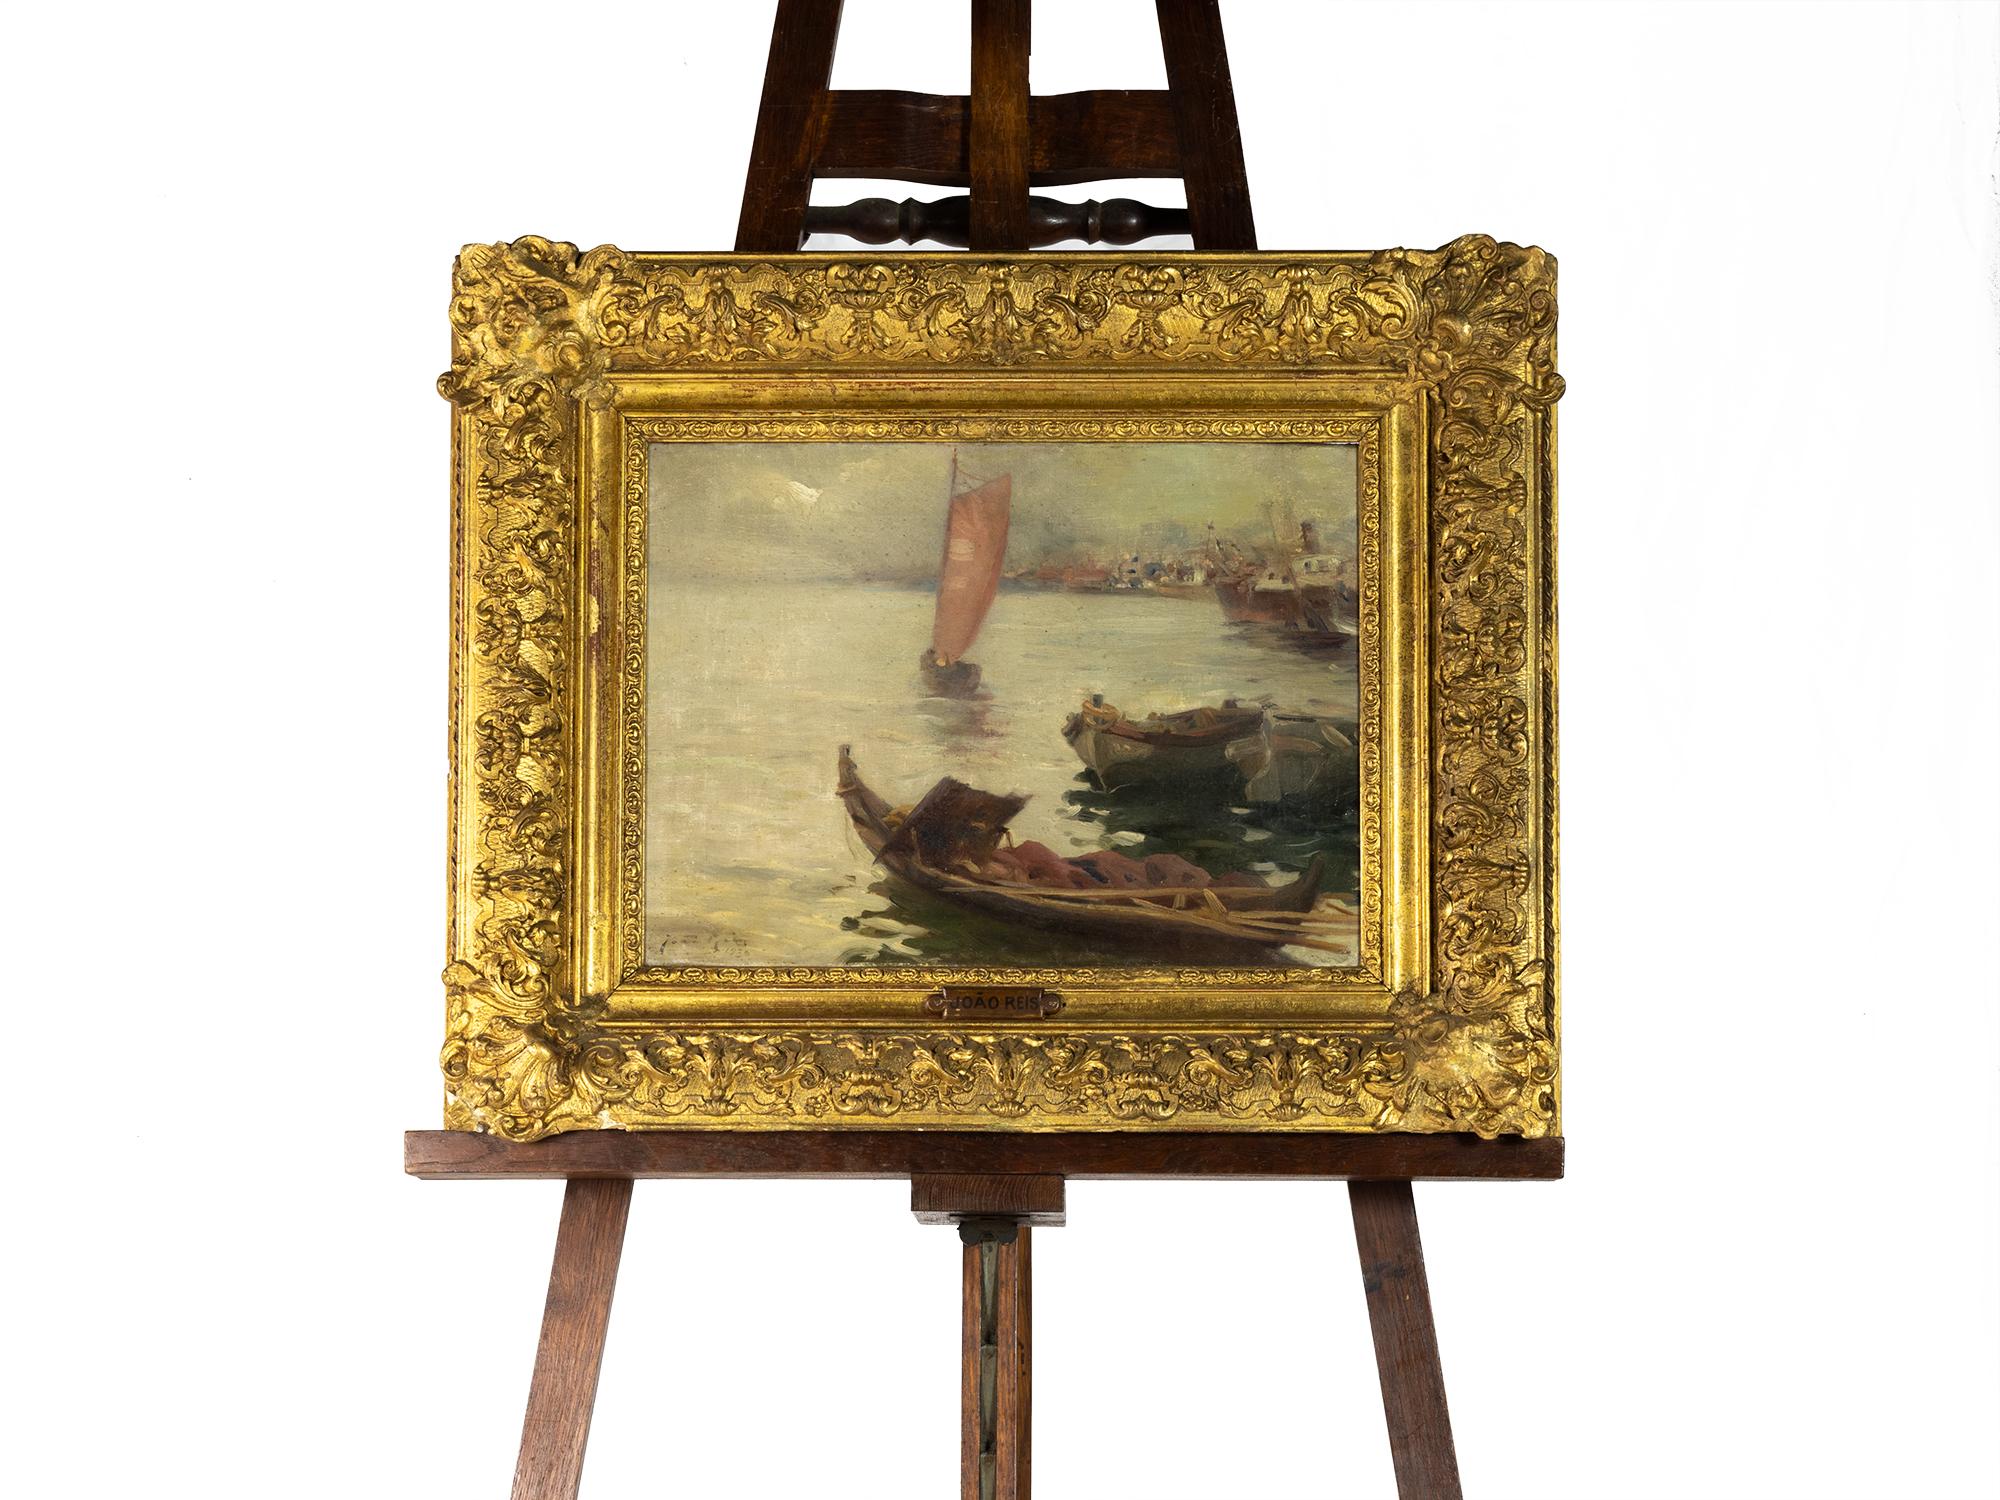 Gemälde eines Segelboots, umgeben von verankerten Booten.
Unterzeichnet von João Reis.


João Reis - Lissabon, Portugal, 15. Februar 1899, Sohn von Carlos Reis, dessen Schüler er an der Lissabonner Schule der Schönen Künste war, gehörte zu der